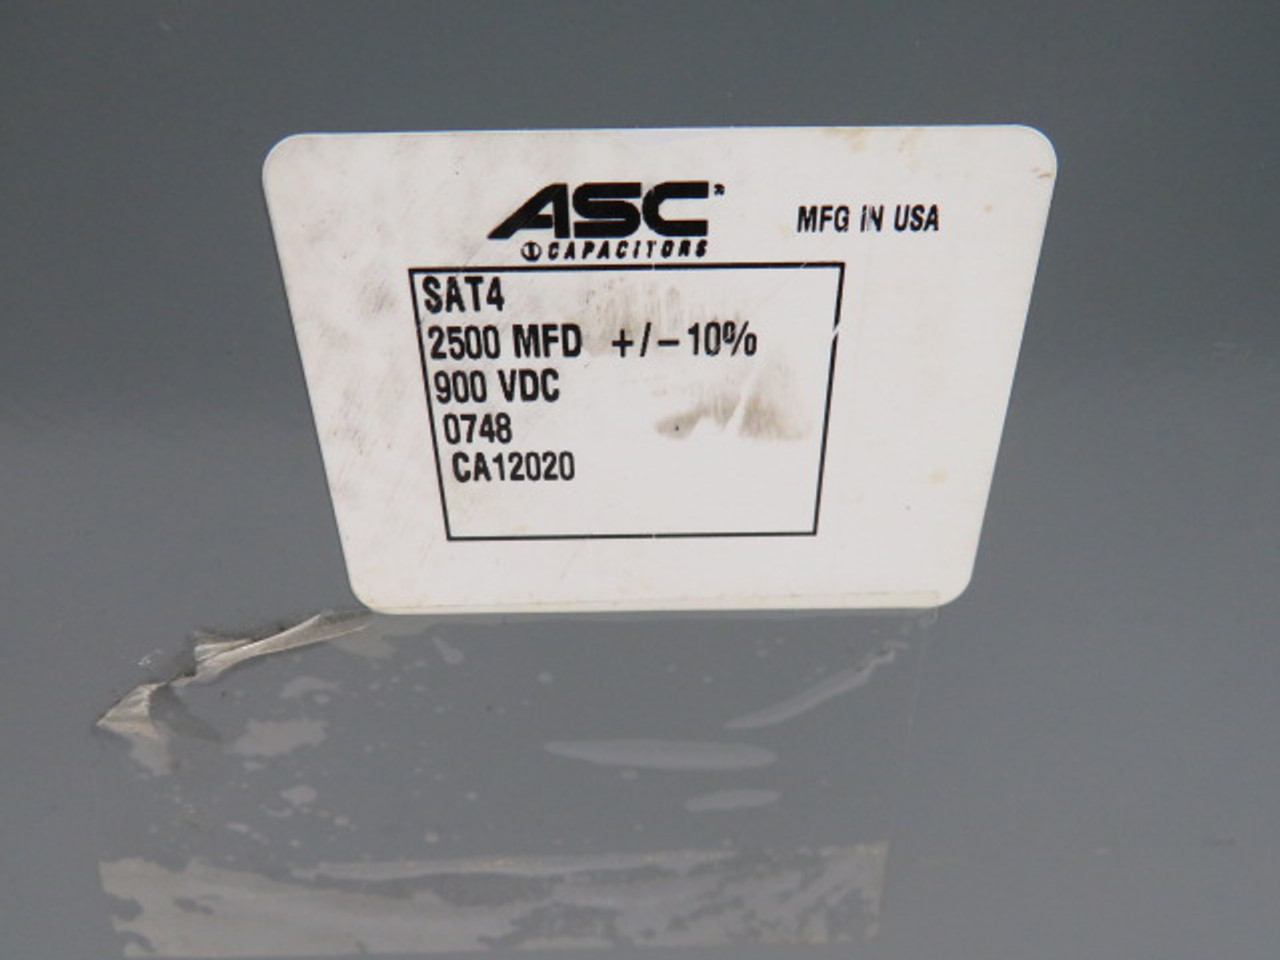 ASC Capacitors SAT4 Storage Capacitor 2500MFD +/- 10% 900VDC CA12020 USED